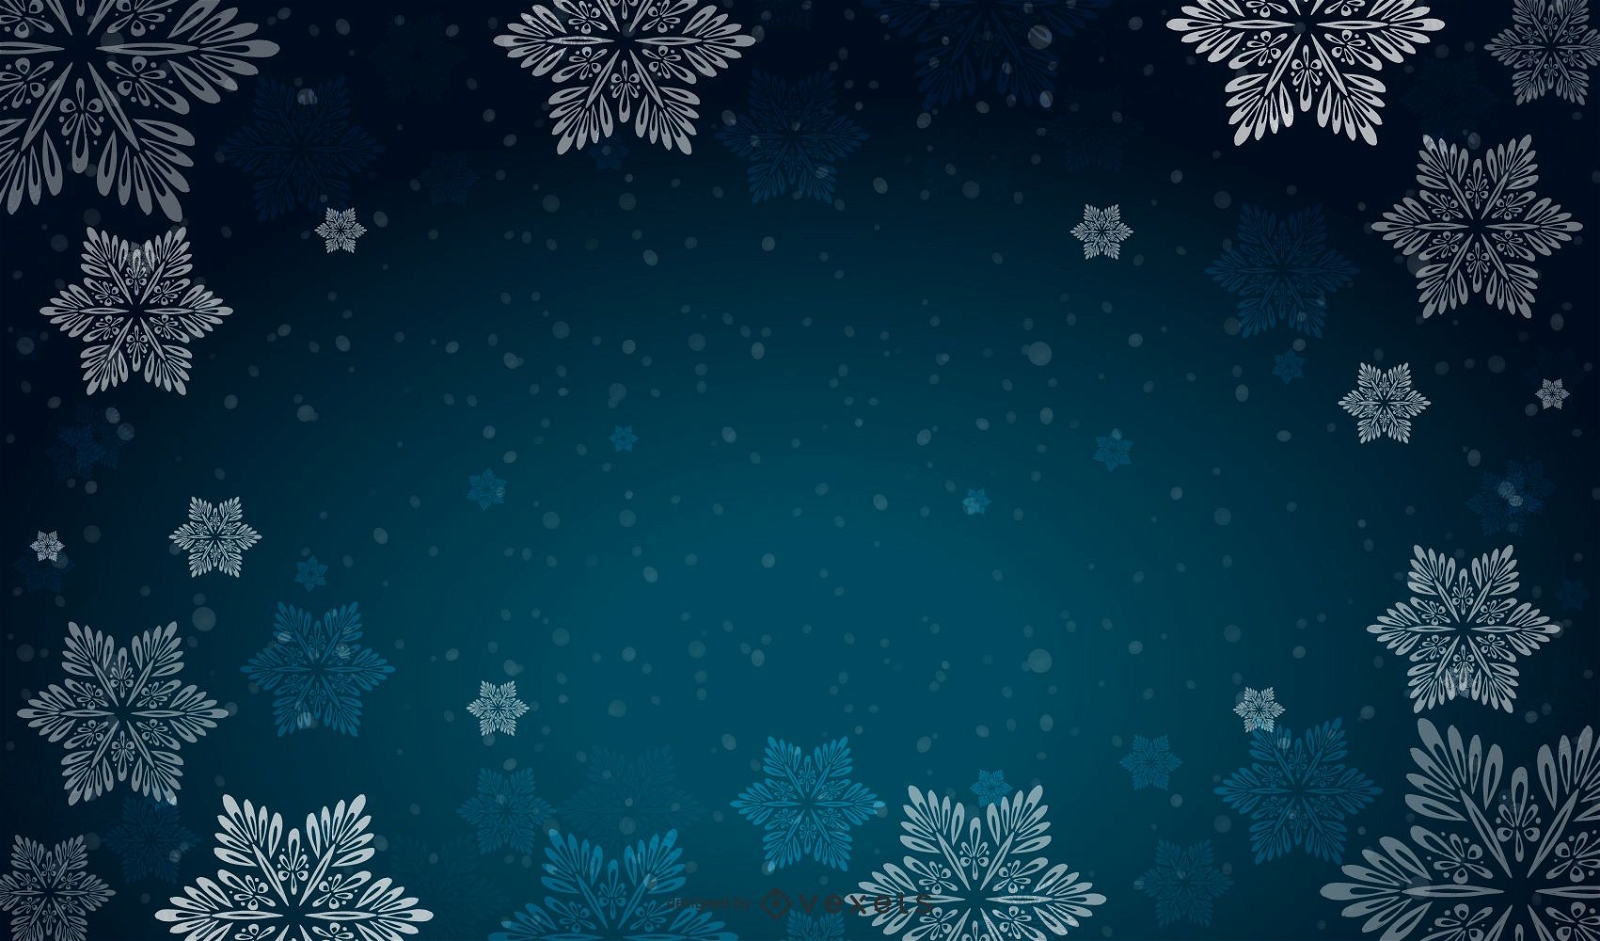 Background Vector Snow Vector Download